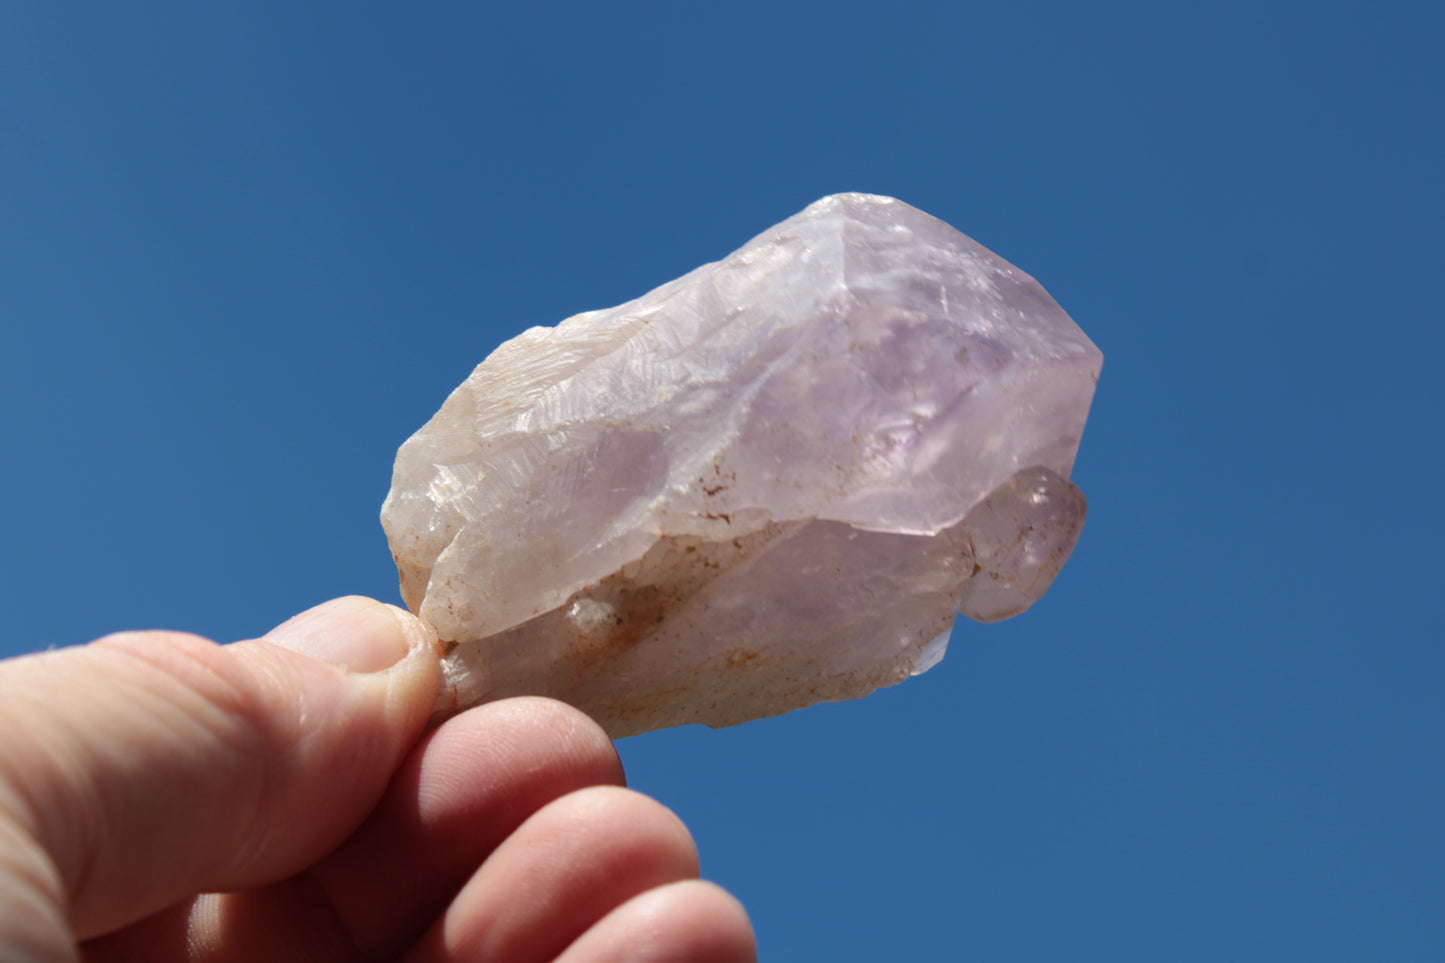 Amethyst crystal 103g SALE